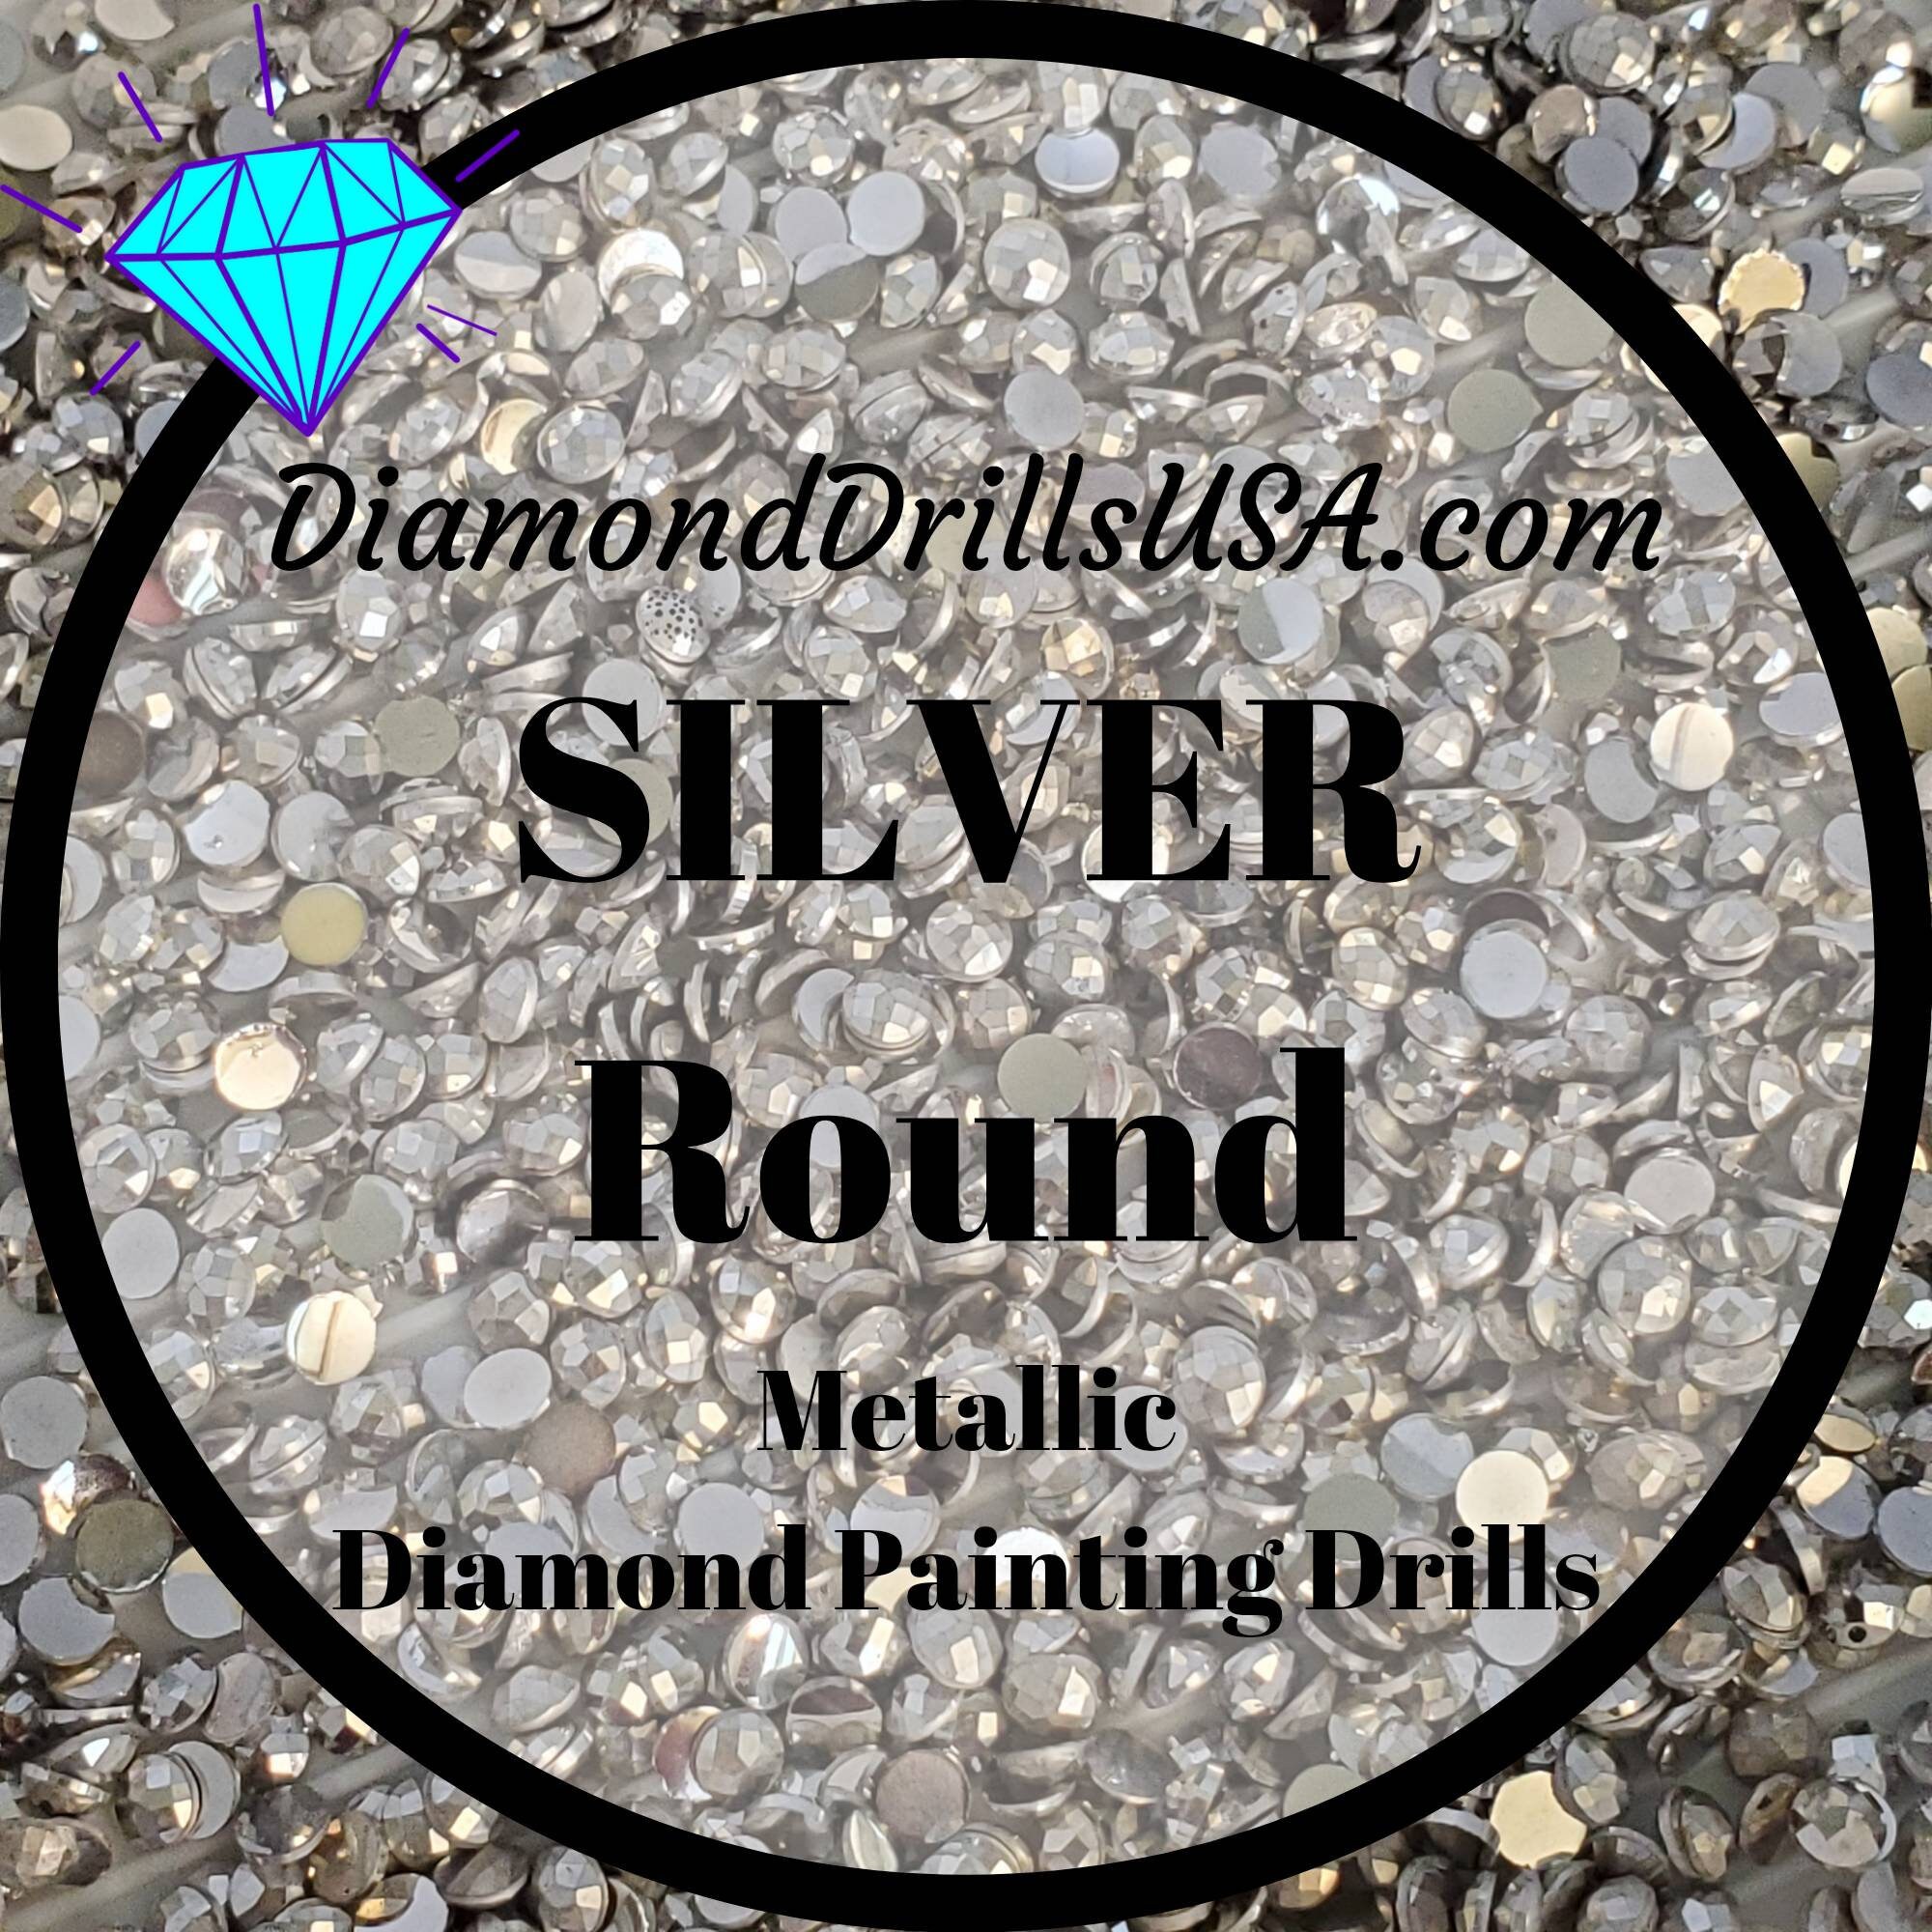 Diamond Painting DMC Spare Drill Storage Diamond Painting 